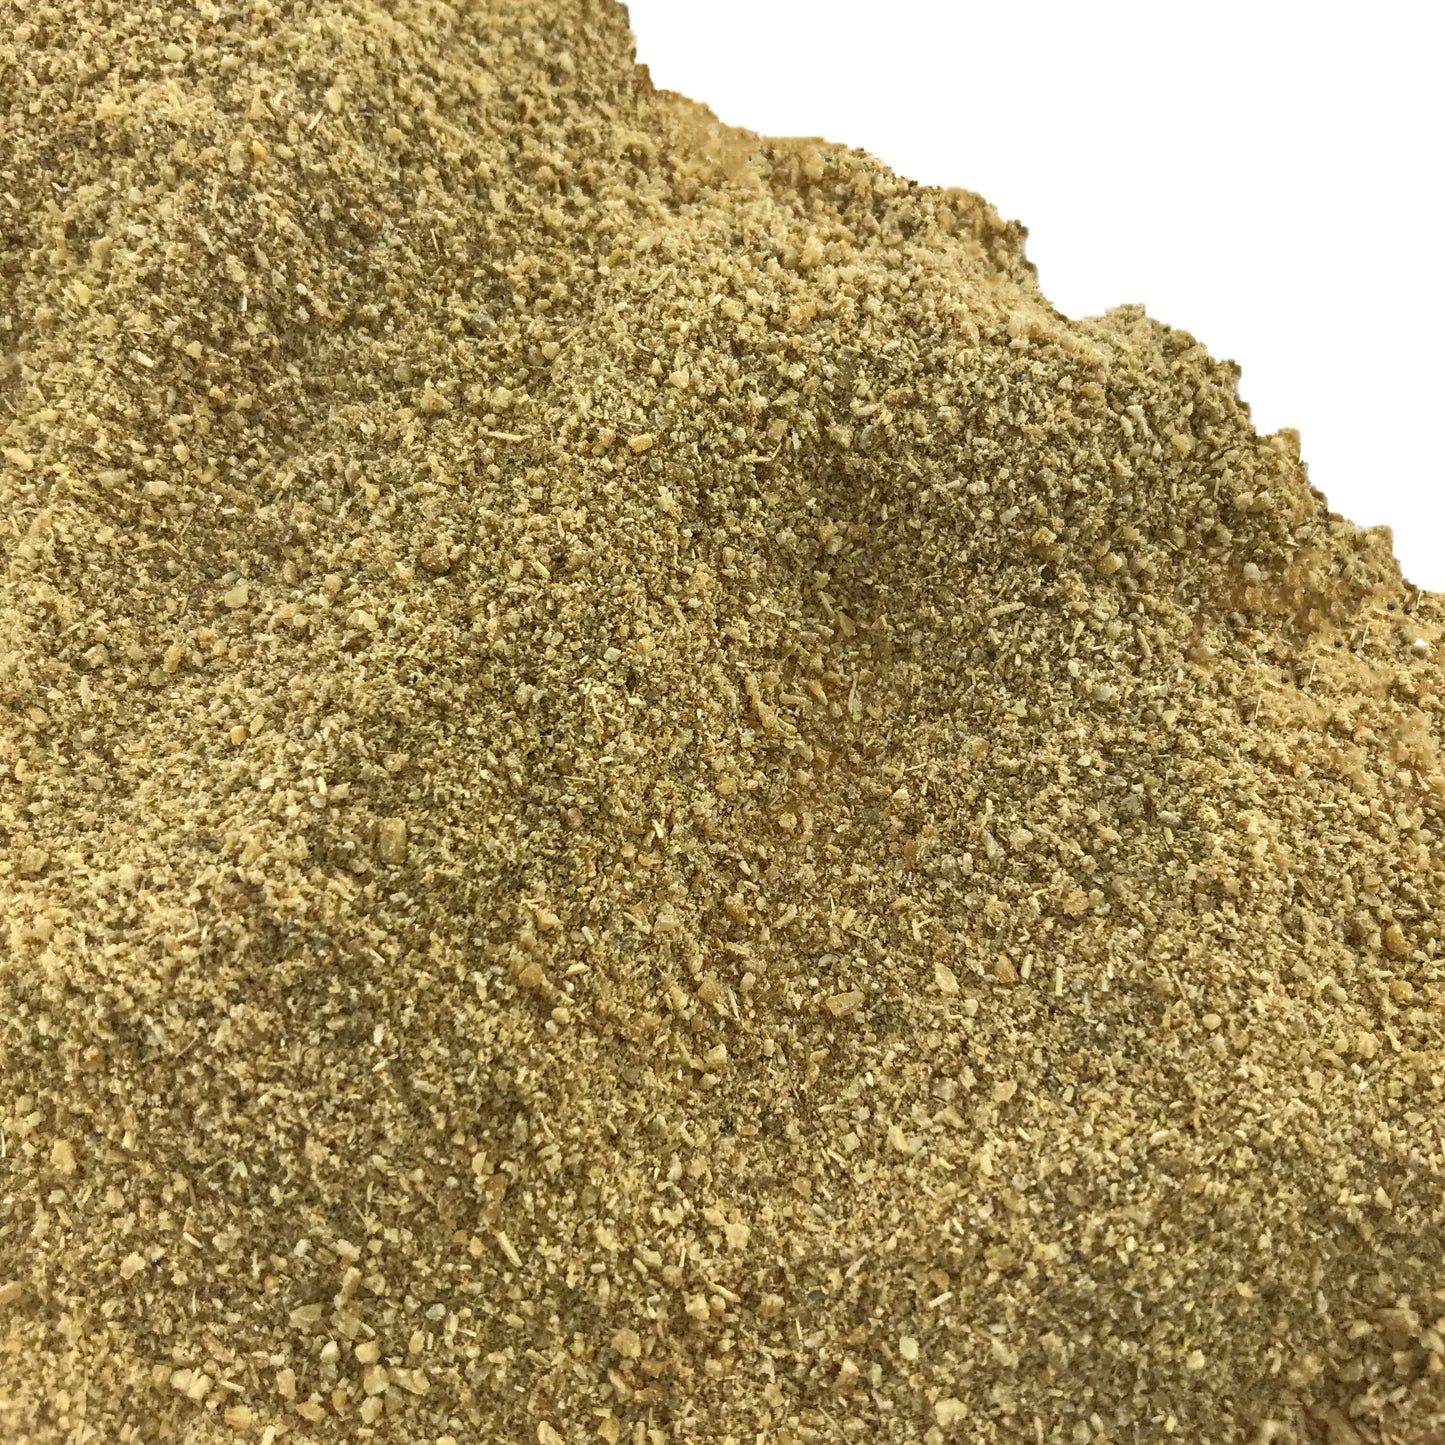 Bulk Fennel Seed Powder 1 oz